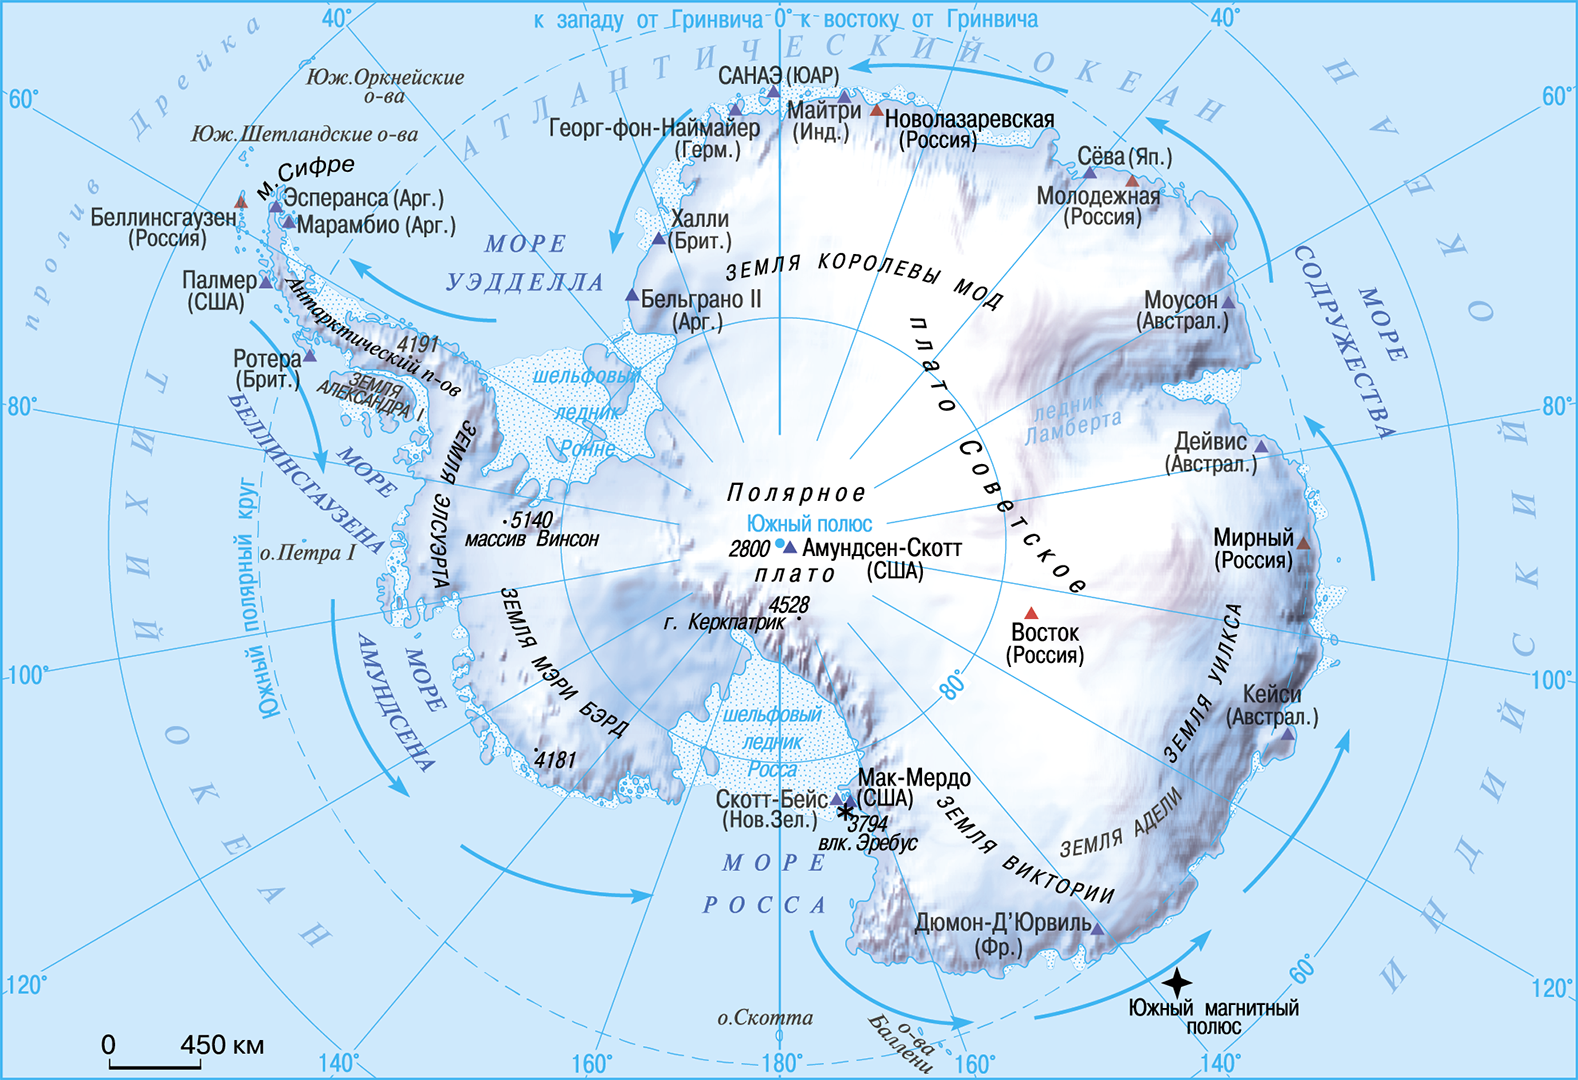 География южного океана